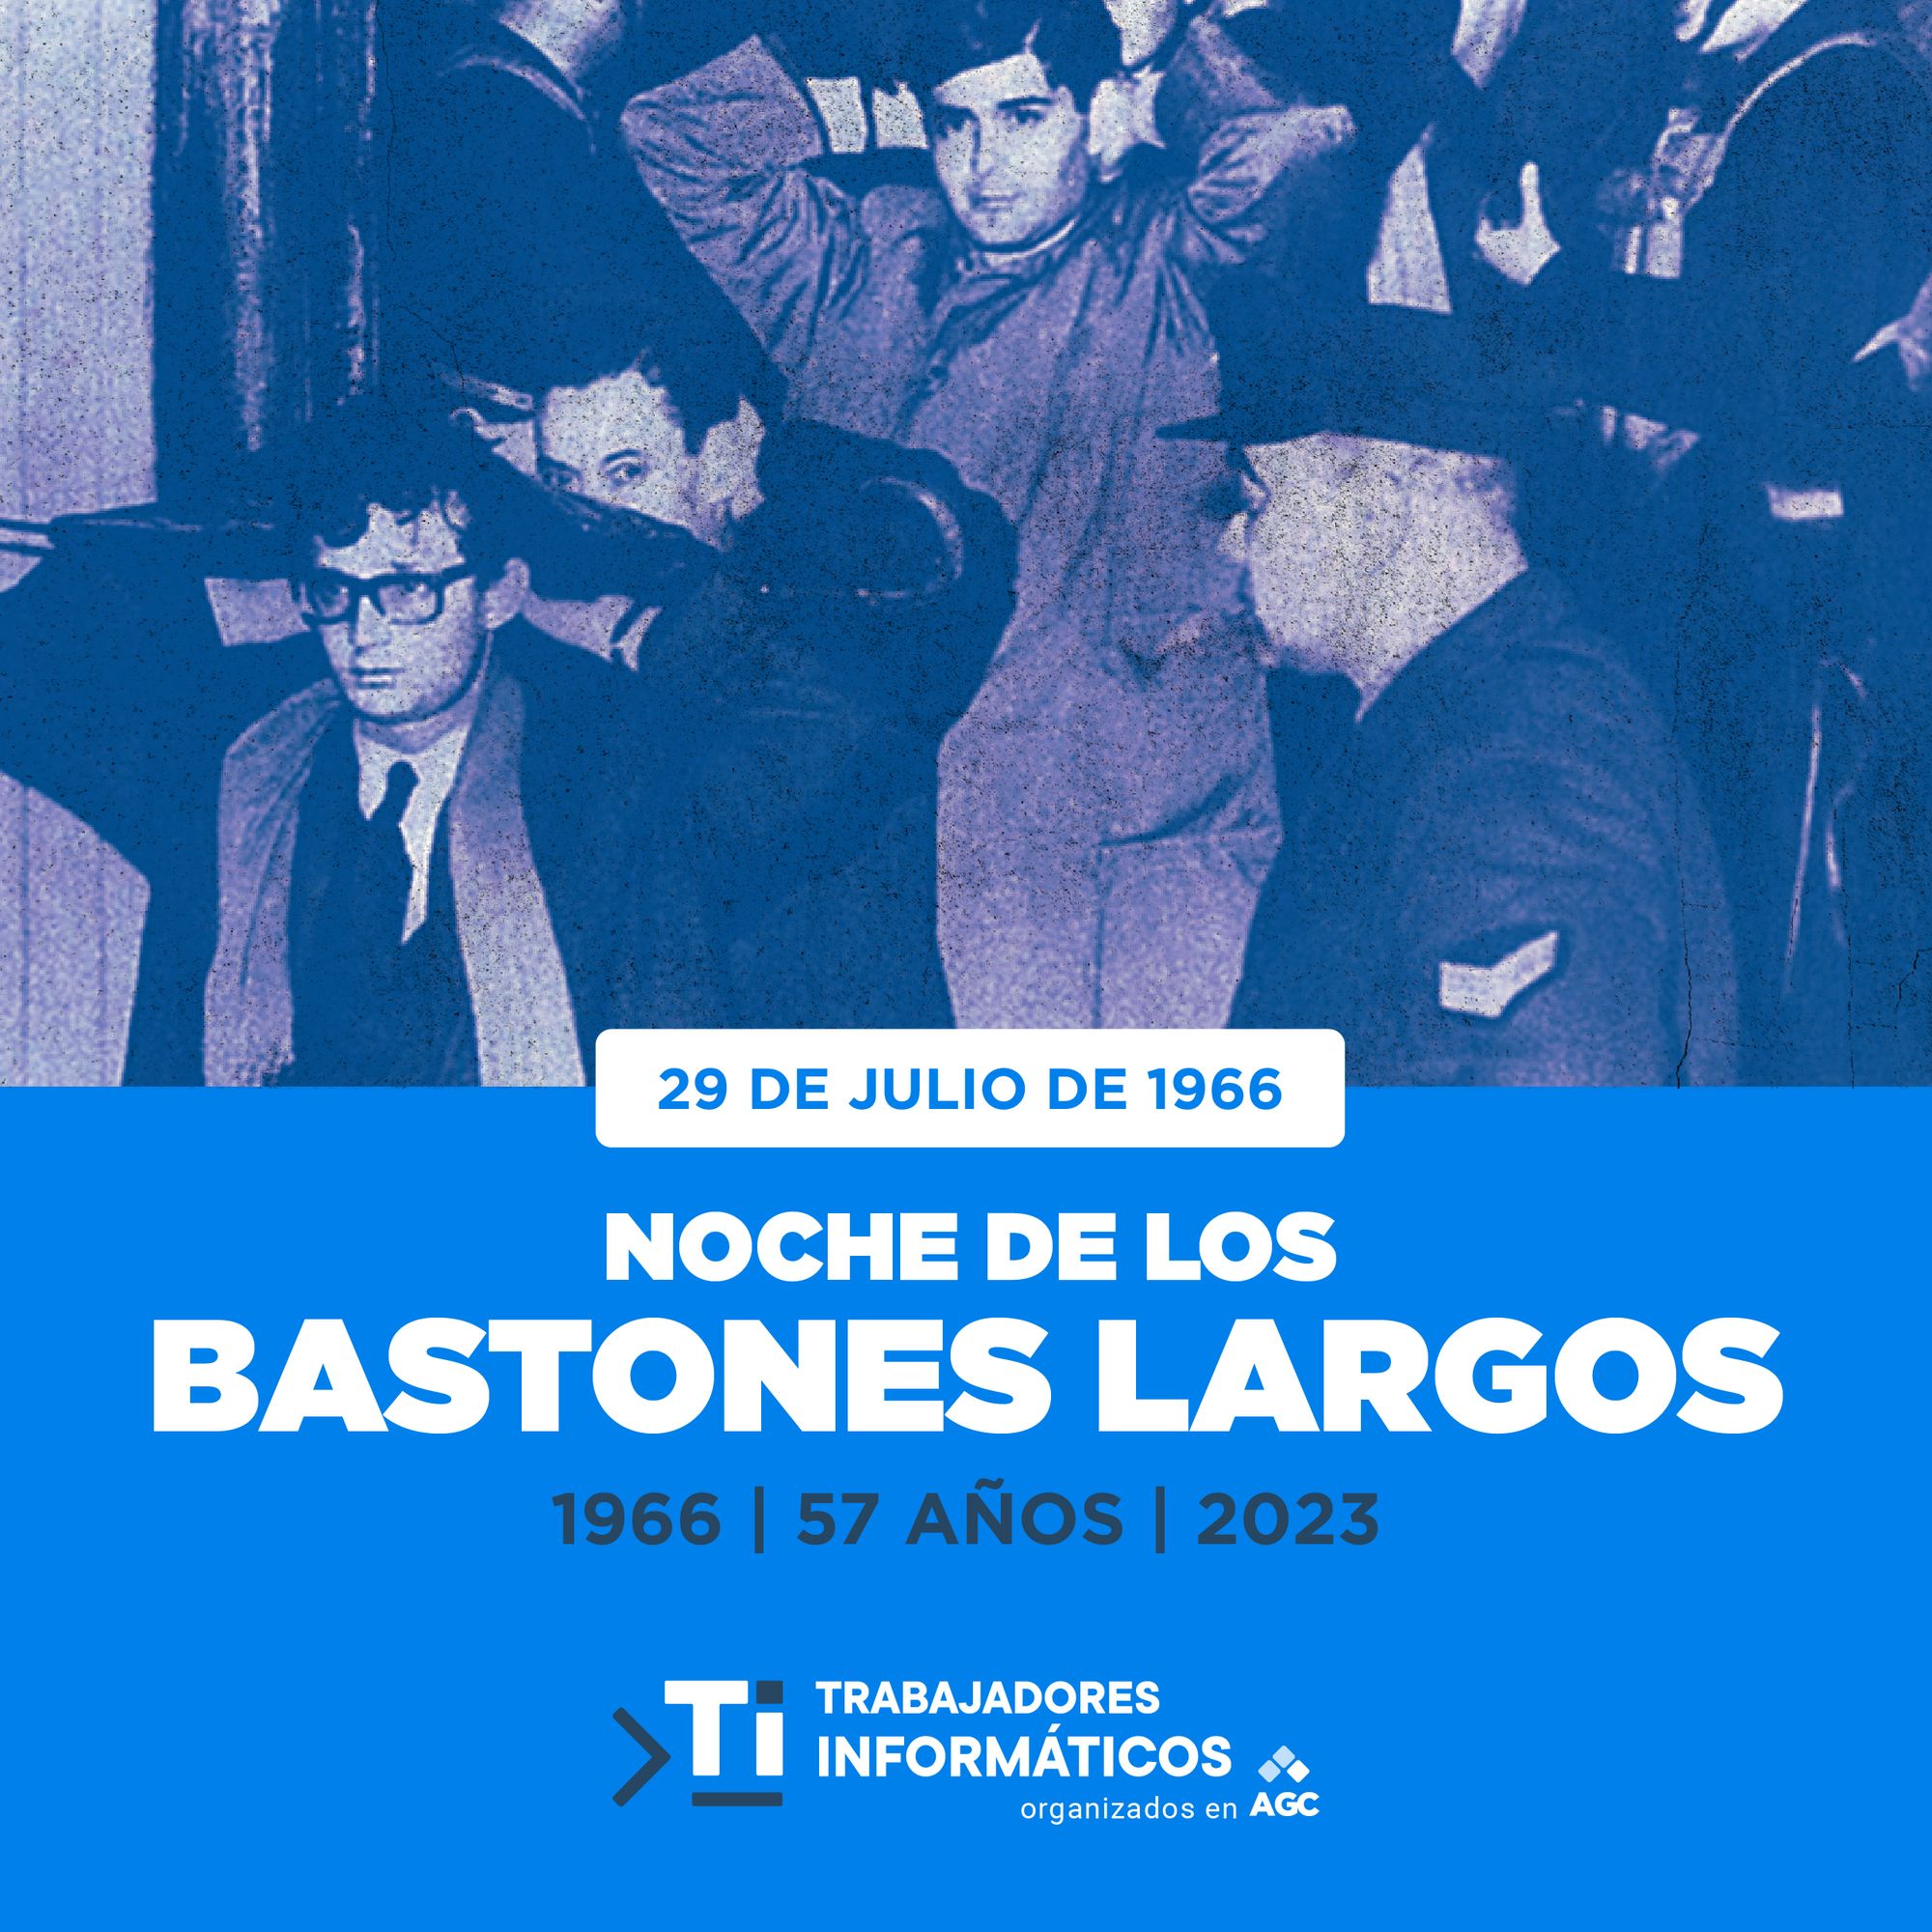 La Noche de los Bastones Largos: Un Triste Episodio en la Historia Argentina